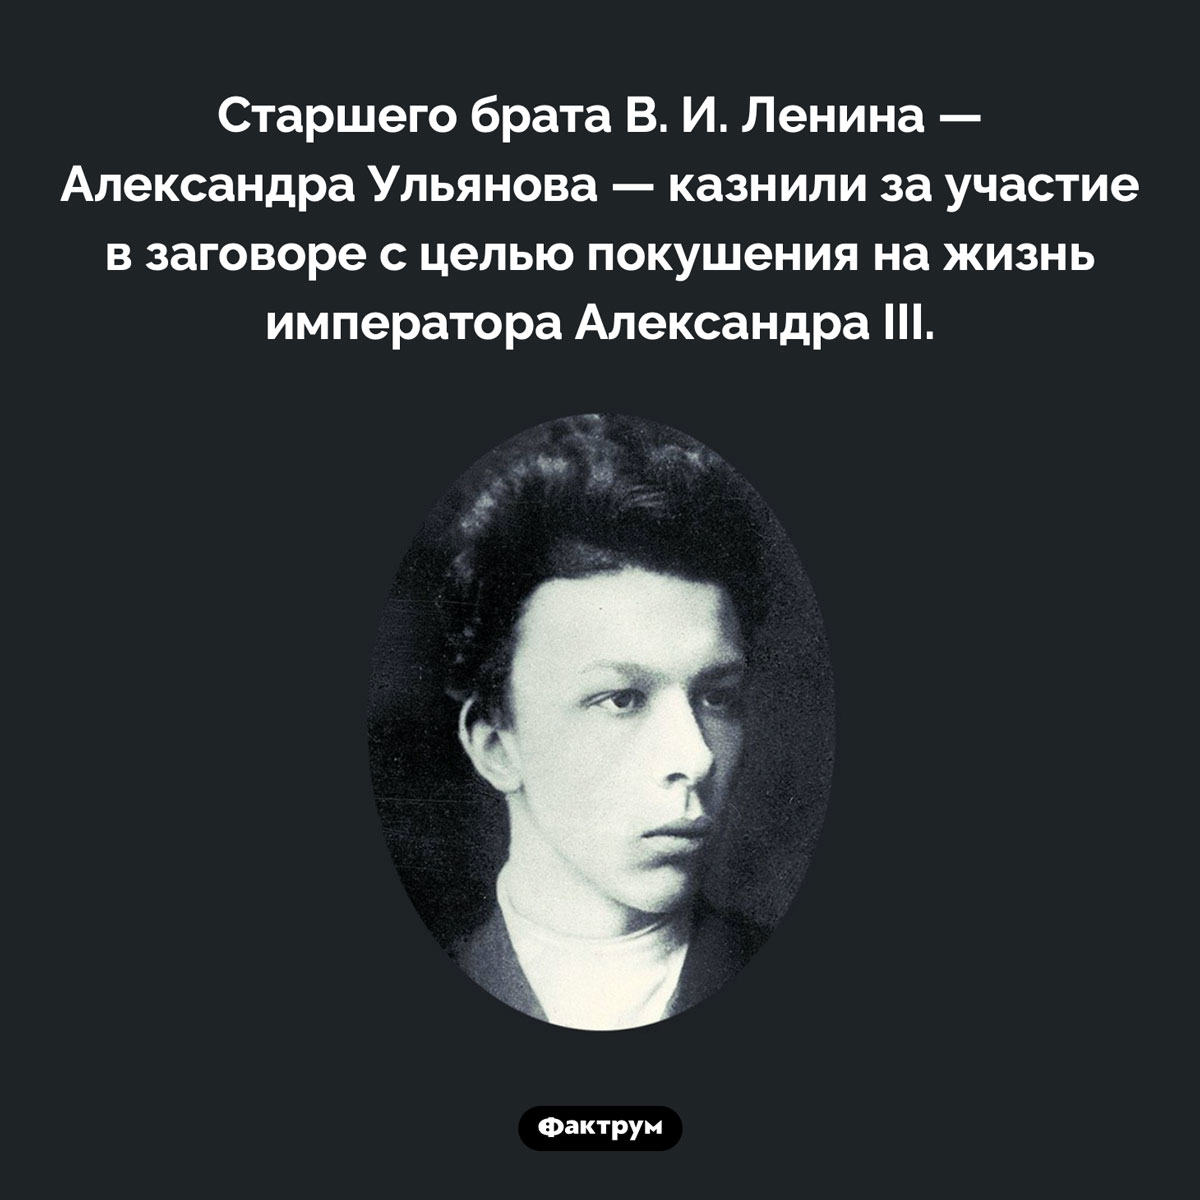 Старший брат Ленина тоже был революционером. Старшего брата В. И. Ленина — Александра Ульянова — казнили за участие в заговоре с целью покушения на жизнь императора Александра III.